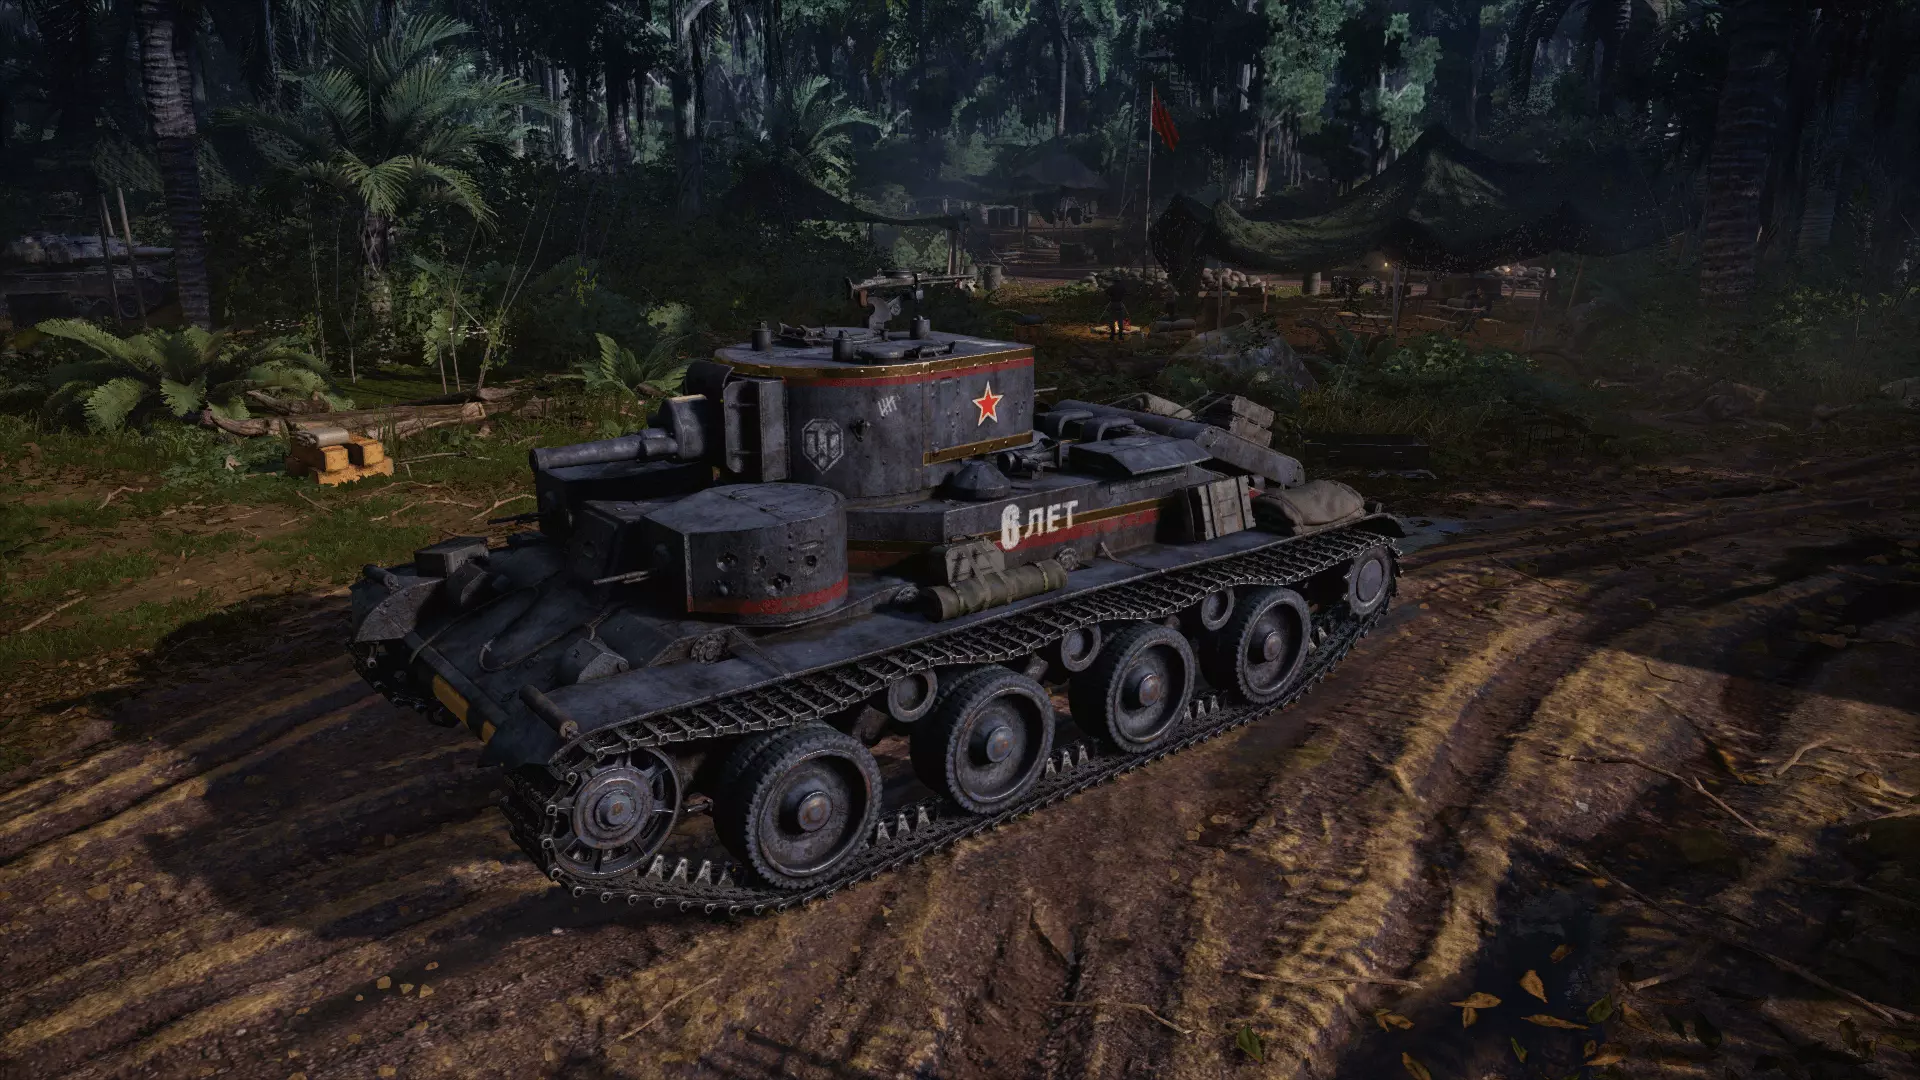 Эксклюзивный танк для каждого игрока, который войдет в игру и сыграет один бой по сети.